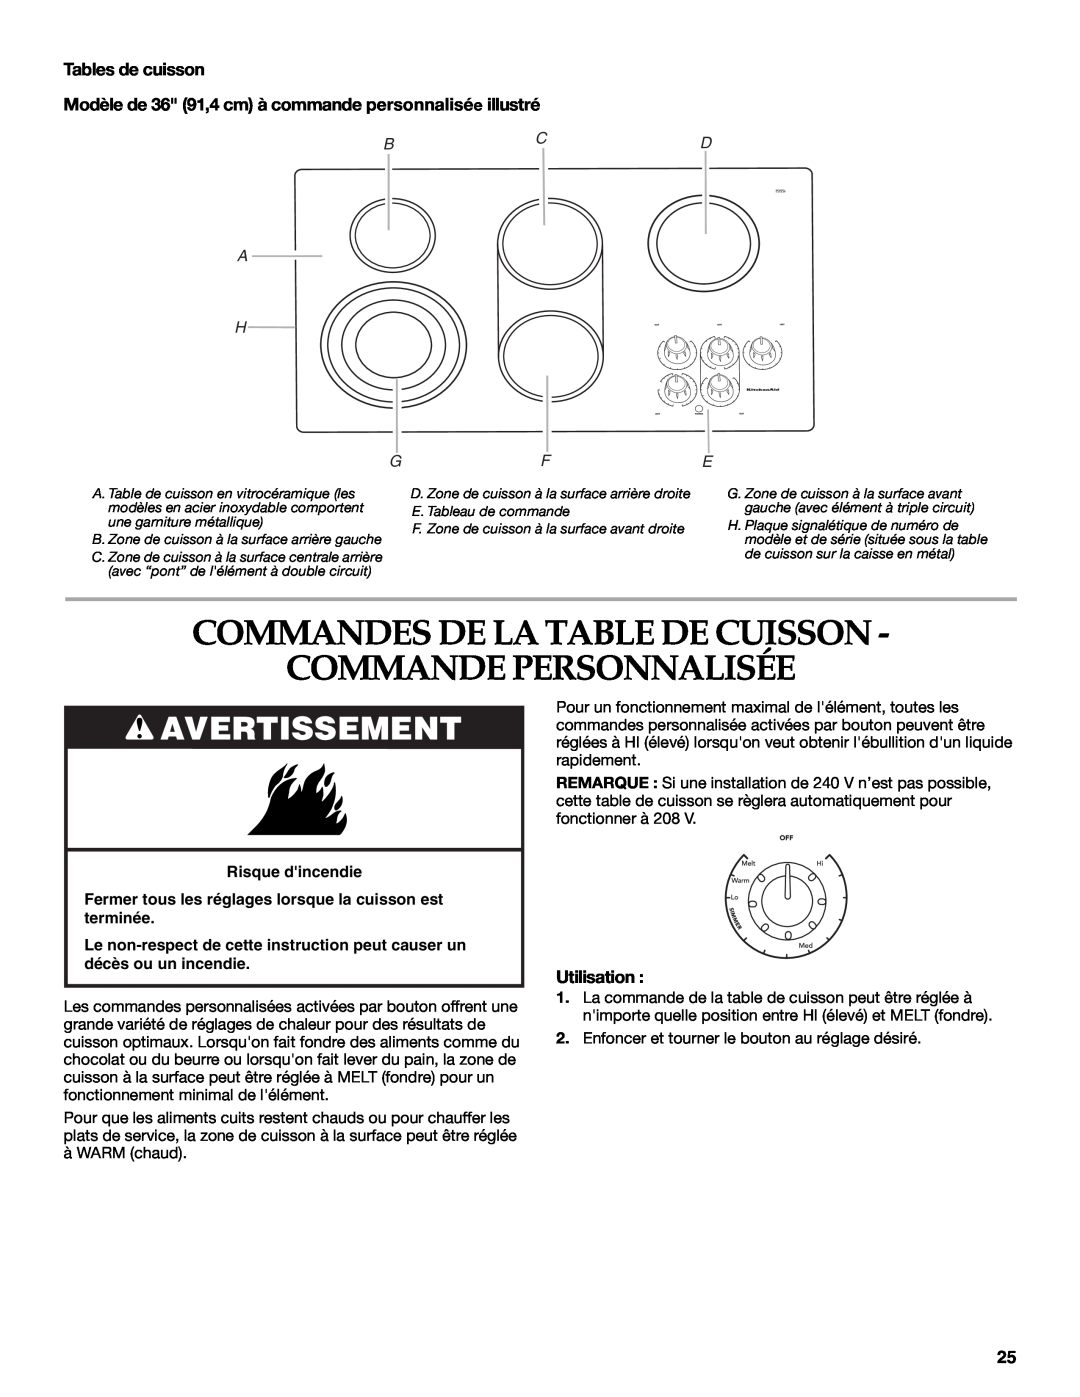 KitchenAid KECC056 Commandes De La Table De Cuisson Commande Personnalisée, Avertissement, Tables de cuisson, Utilisation 